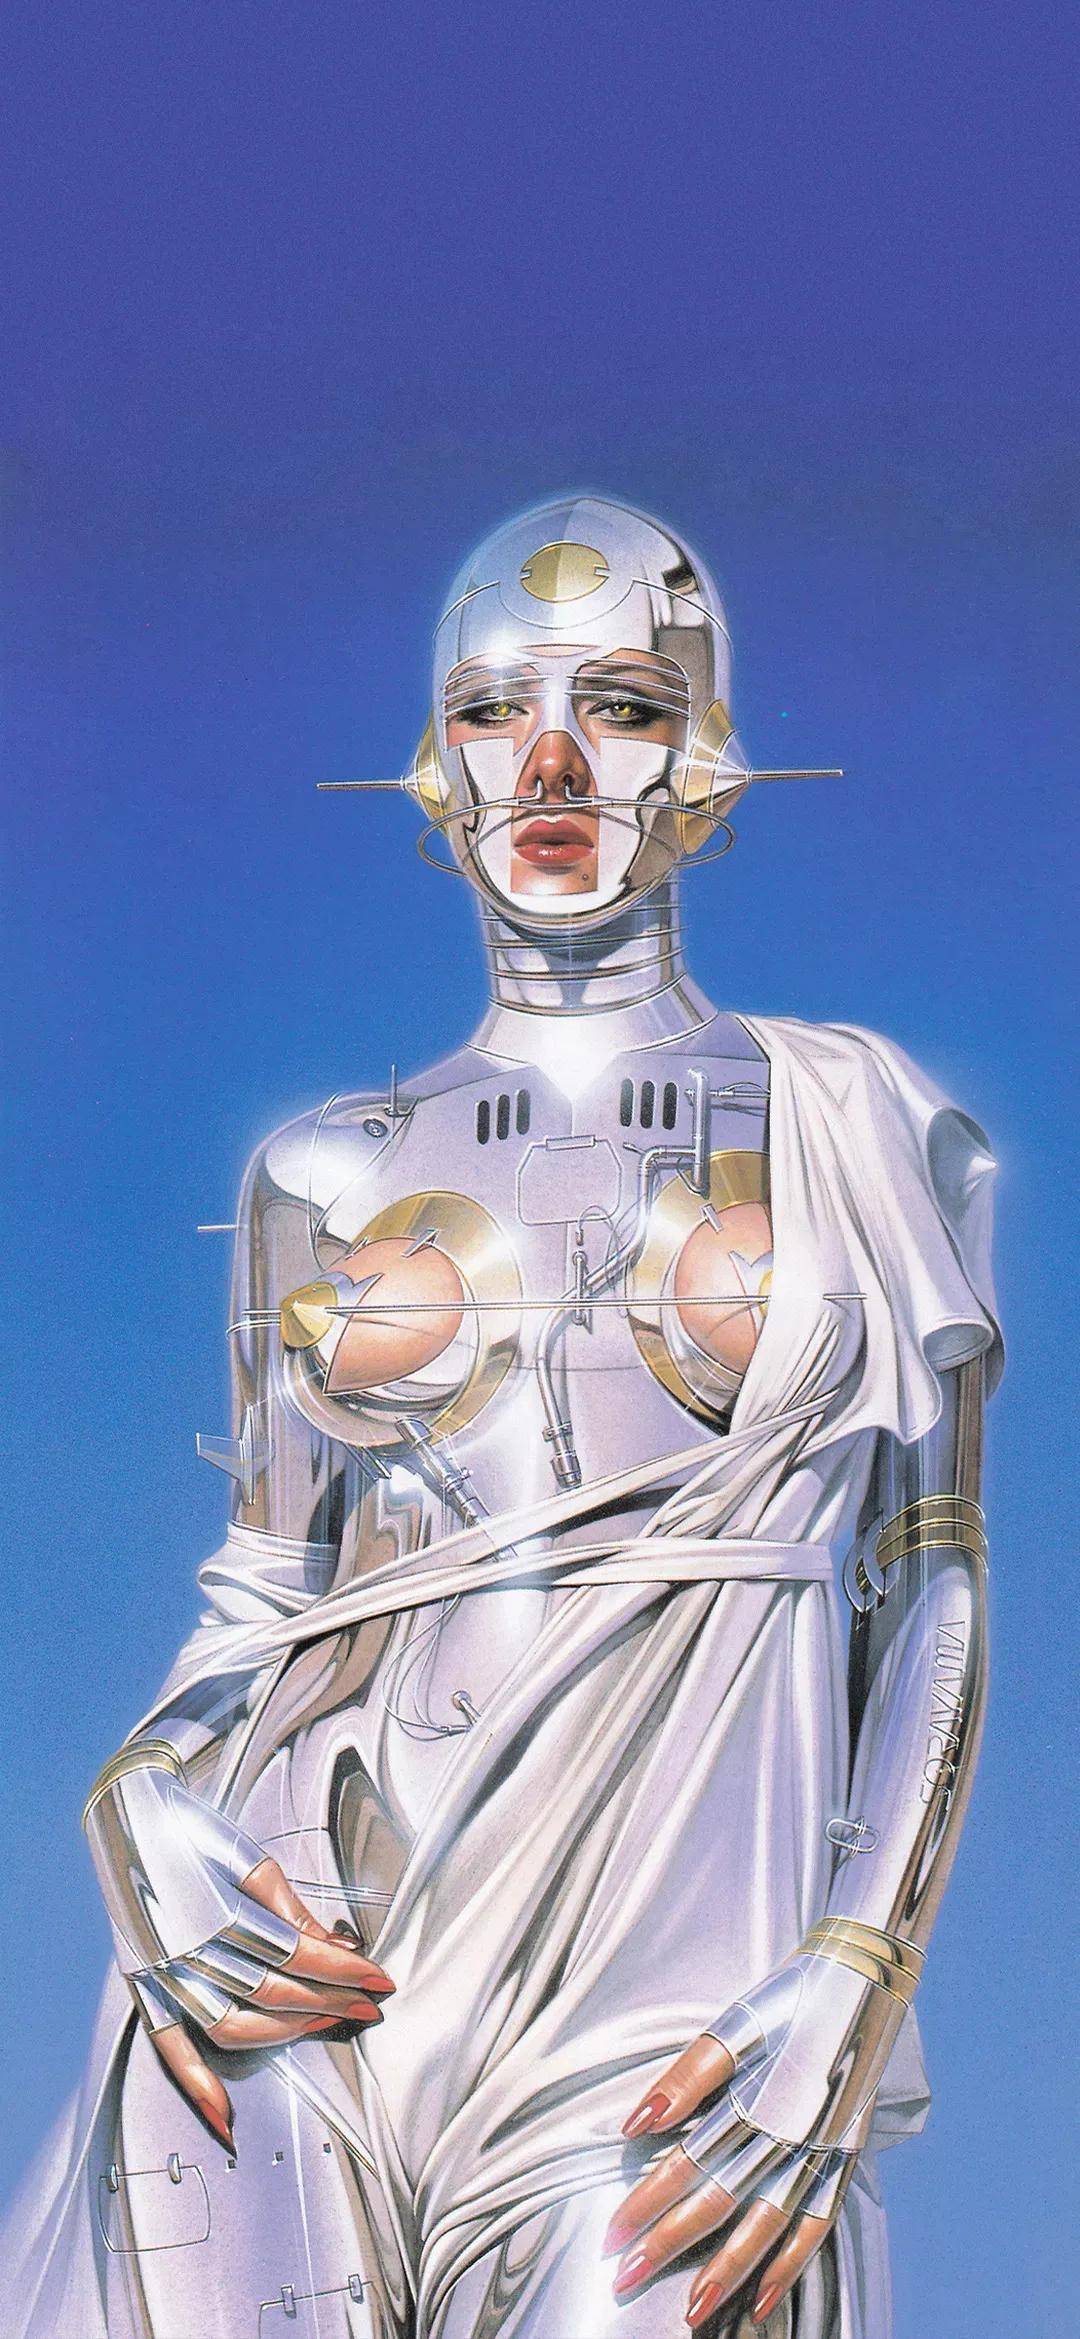 艺乎丨时尚缪斯机械姬呈现艺术与科技的奇妙对撞